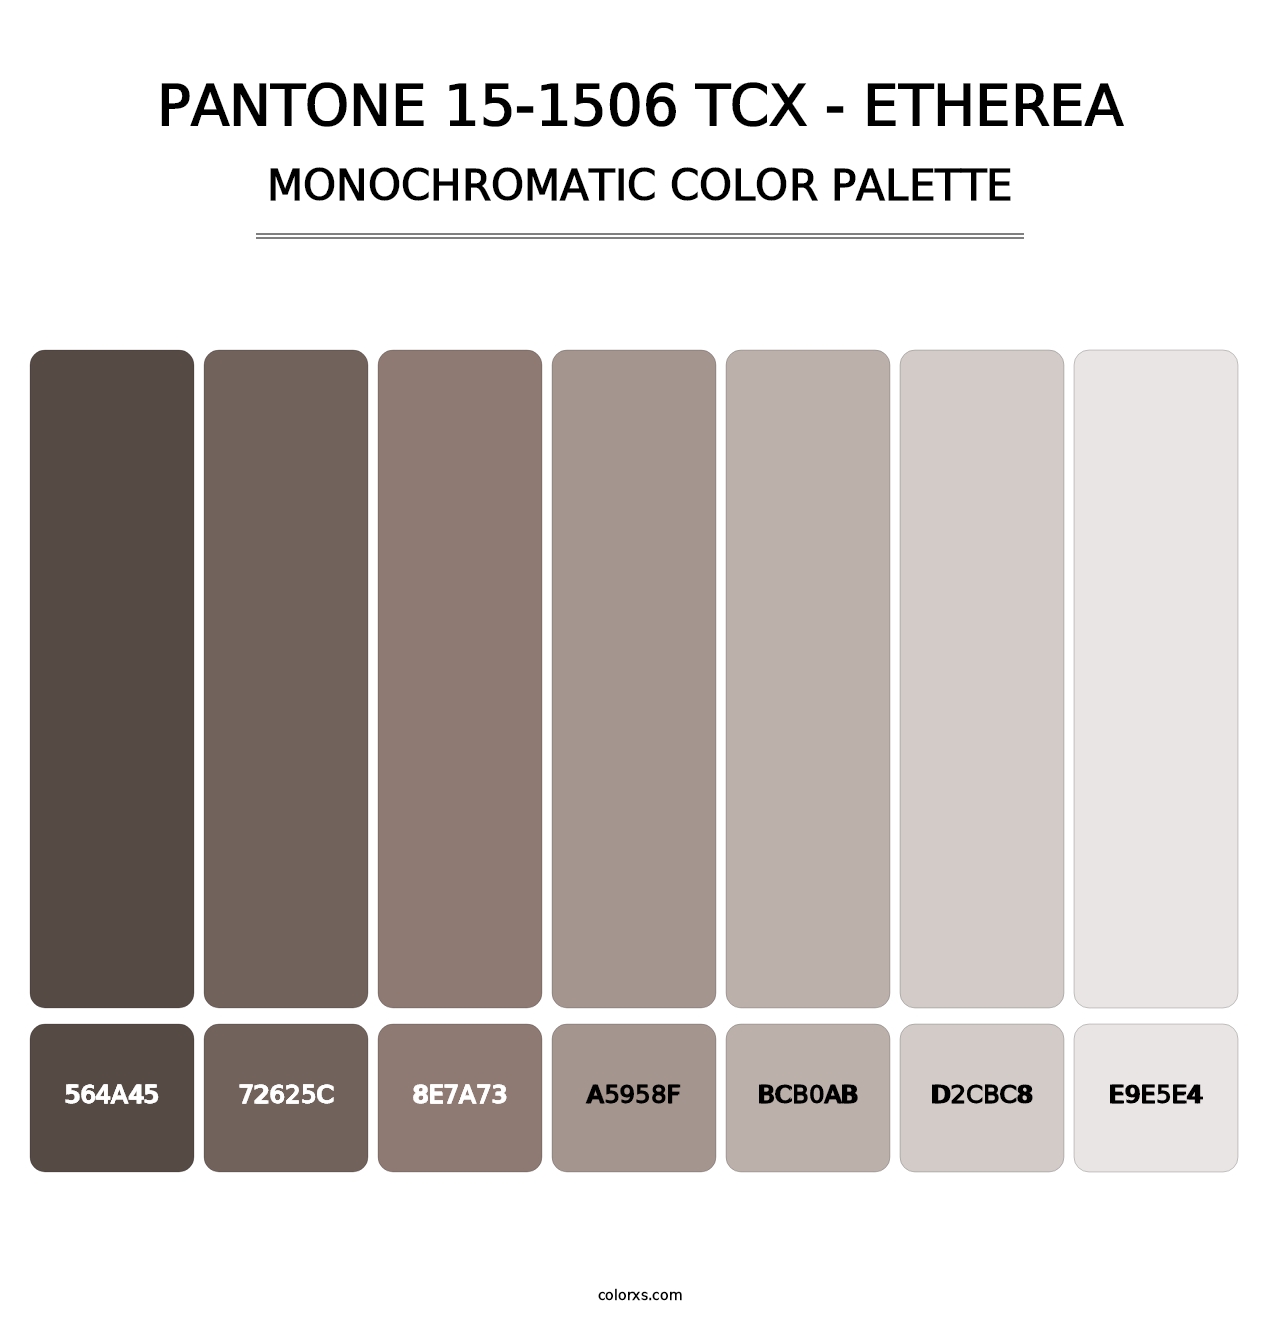 PANTONE 15-1506 TCX - Etherea - Monochromatic Color Palette